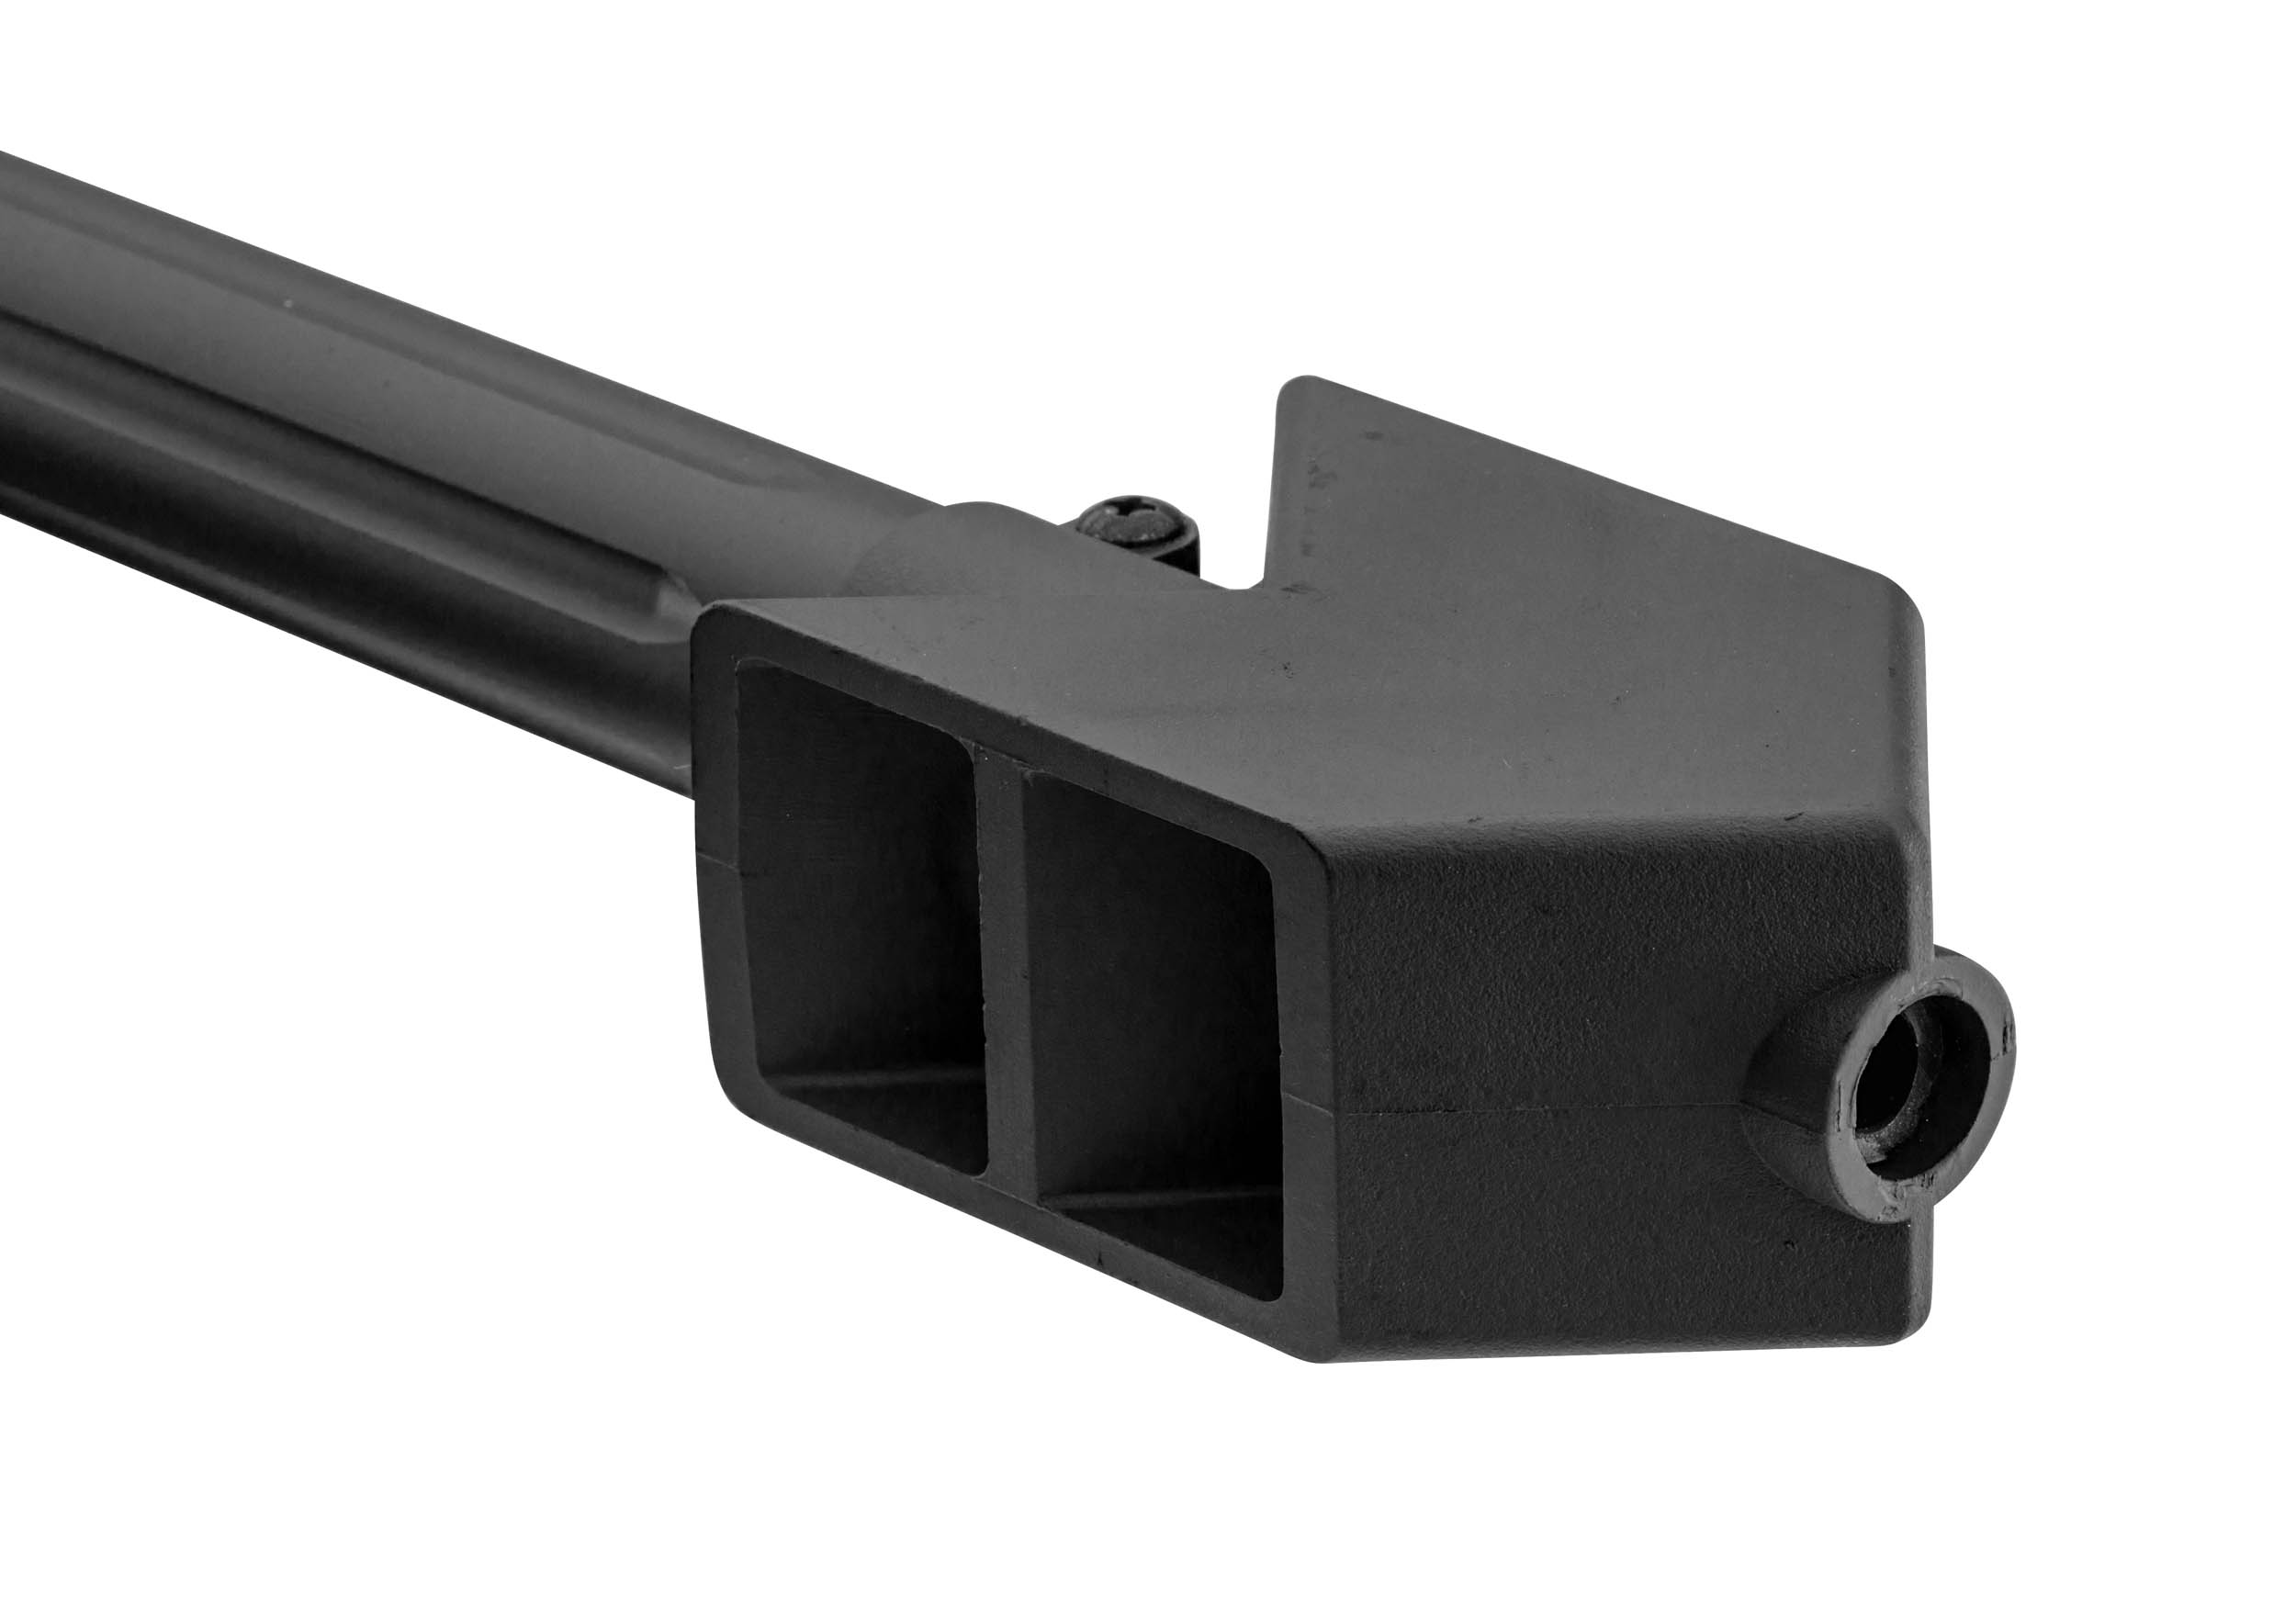 PCKLR3050-05 Pack Sniper LT-20 noir M82 1,5J + lunette + bi-pied + poignée